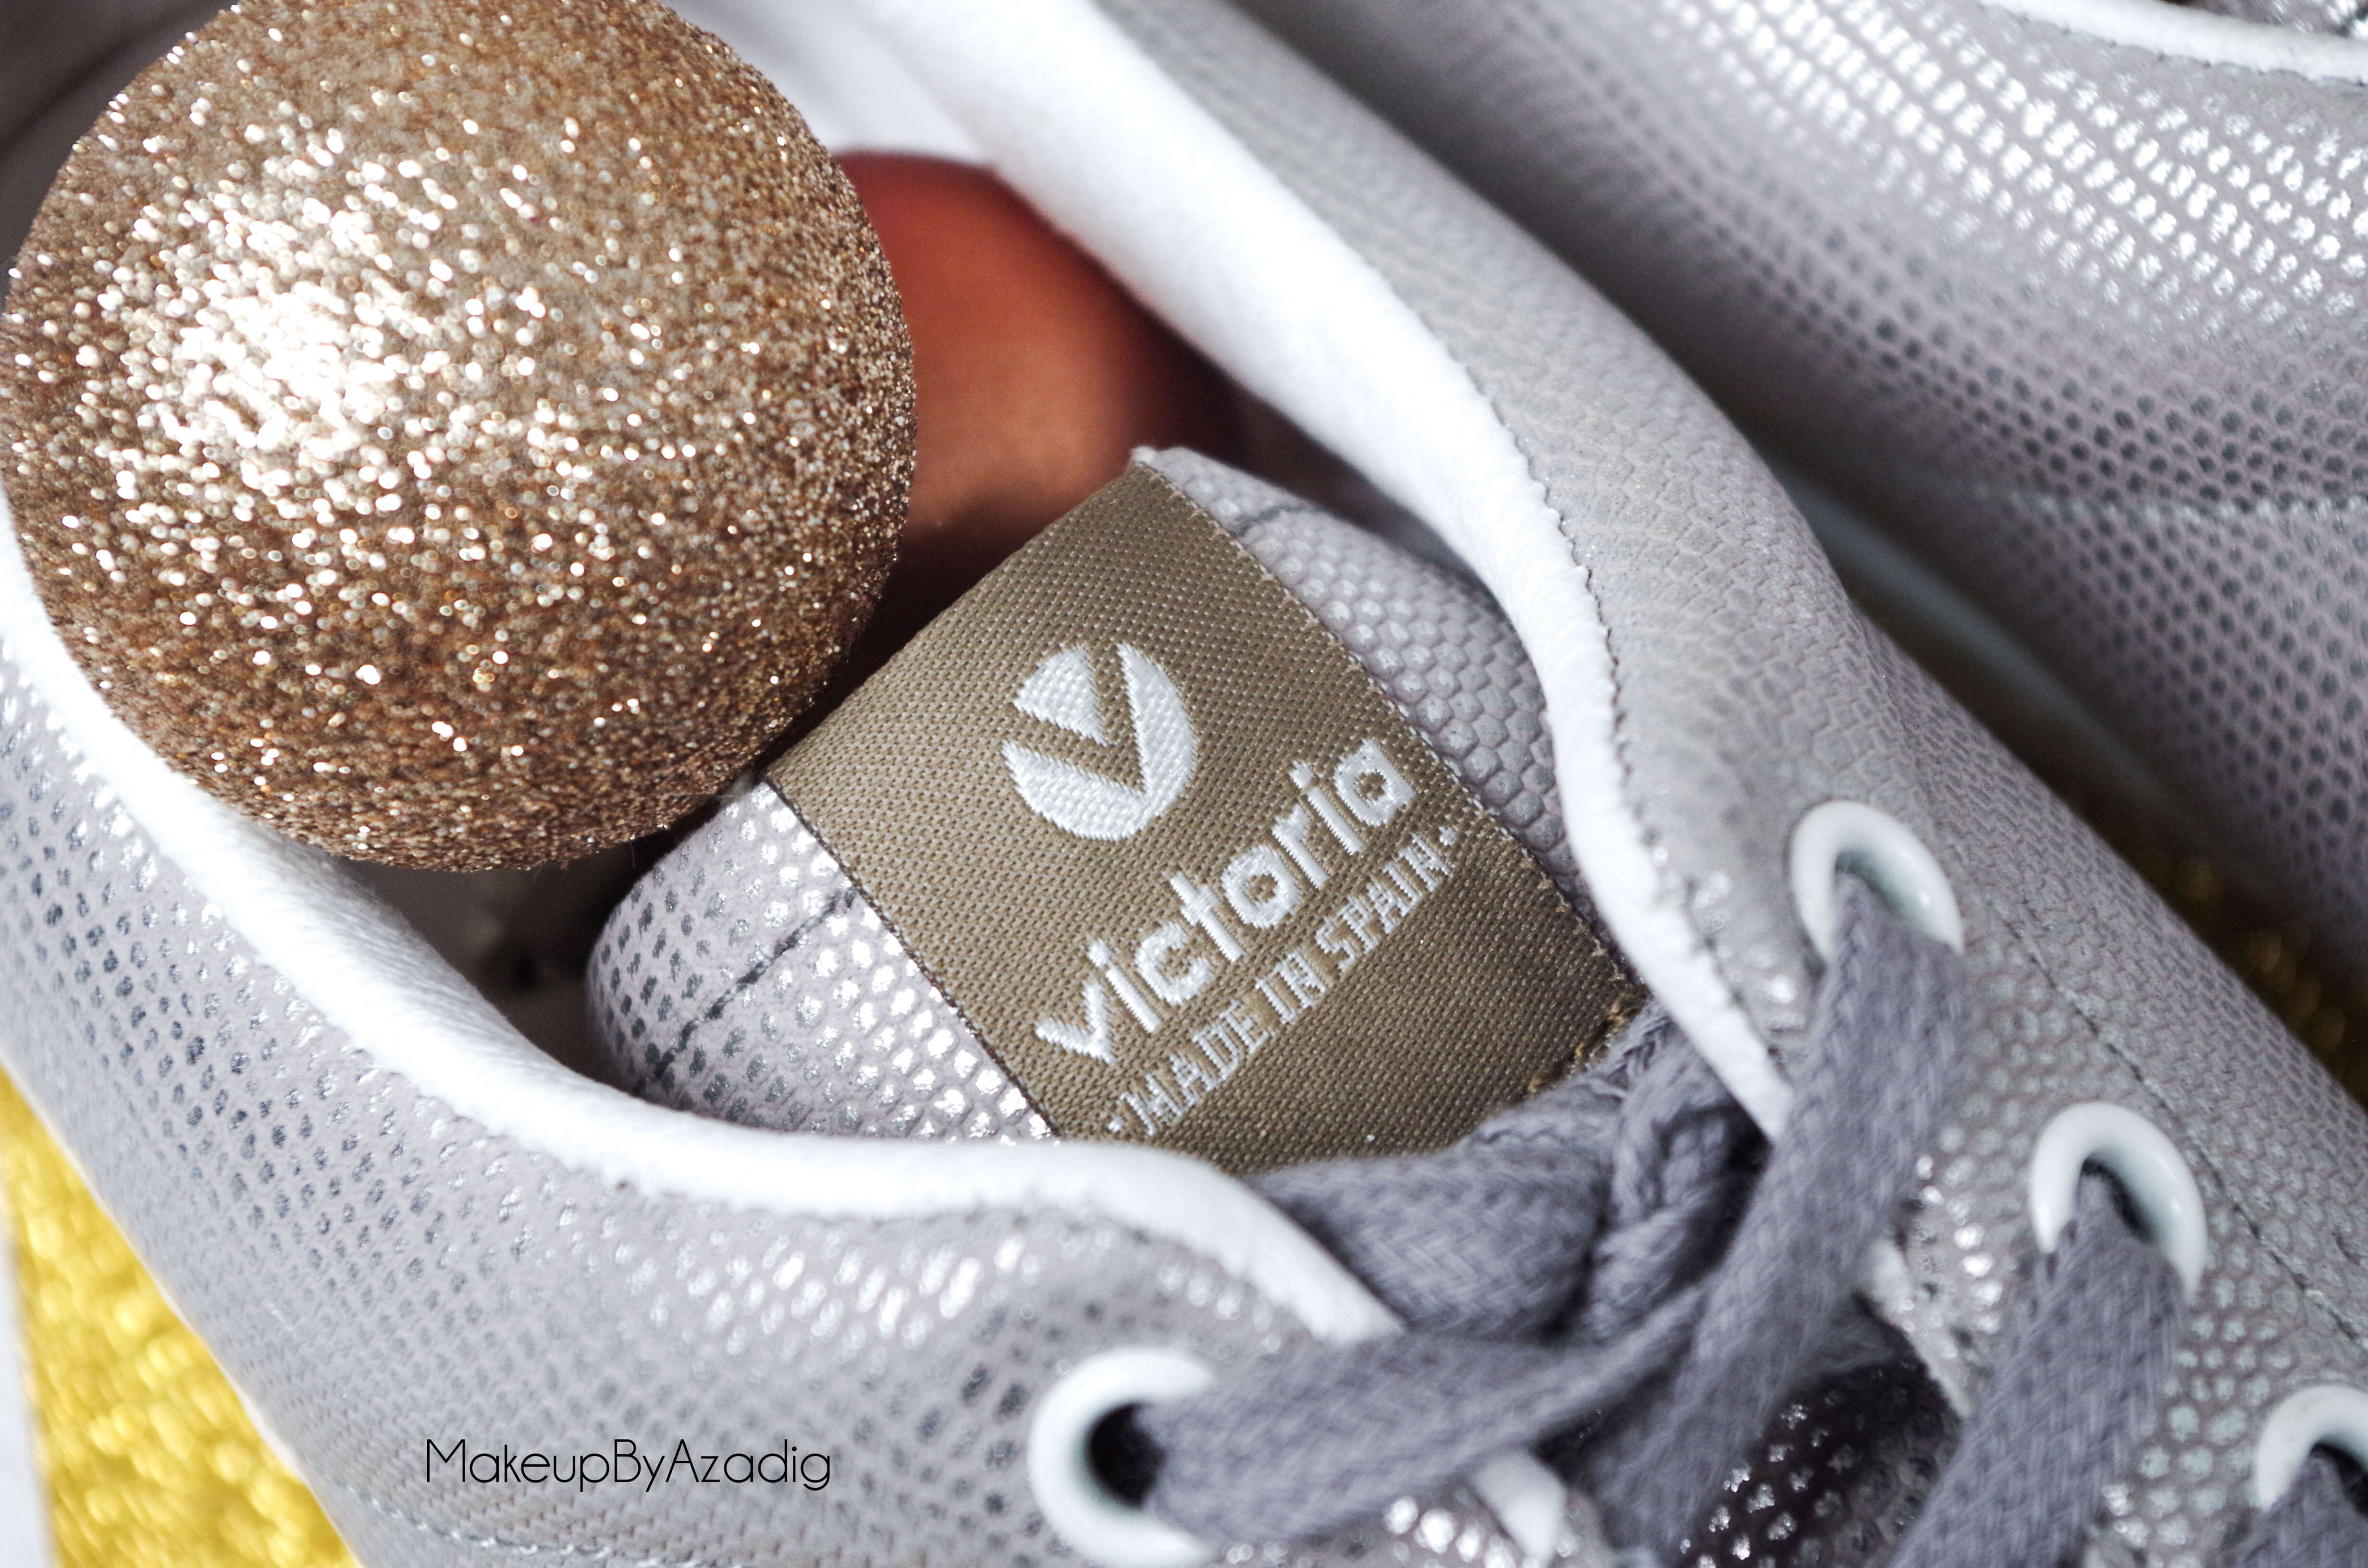 victoria-deportivo-basket-tejido-sneakers-usine-23-makeupbyazadig-troyes-paris-baskets-metallisees-spain